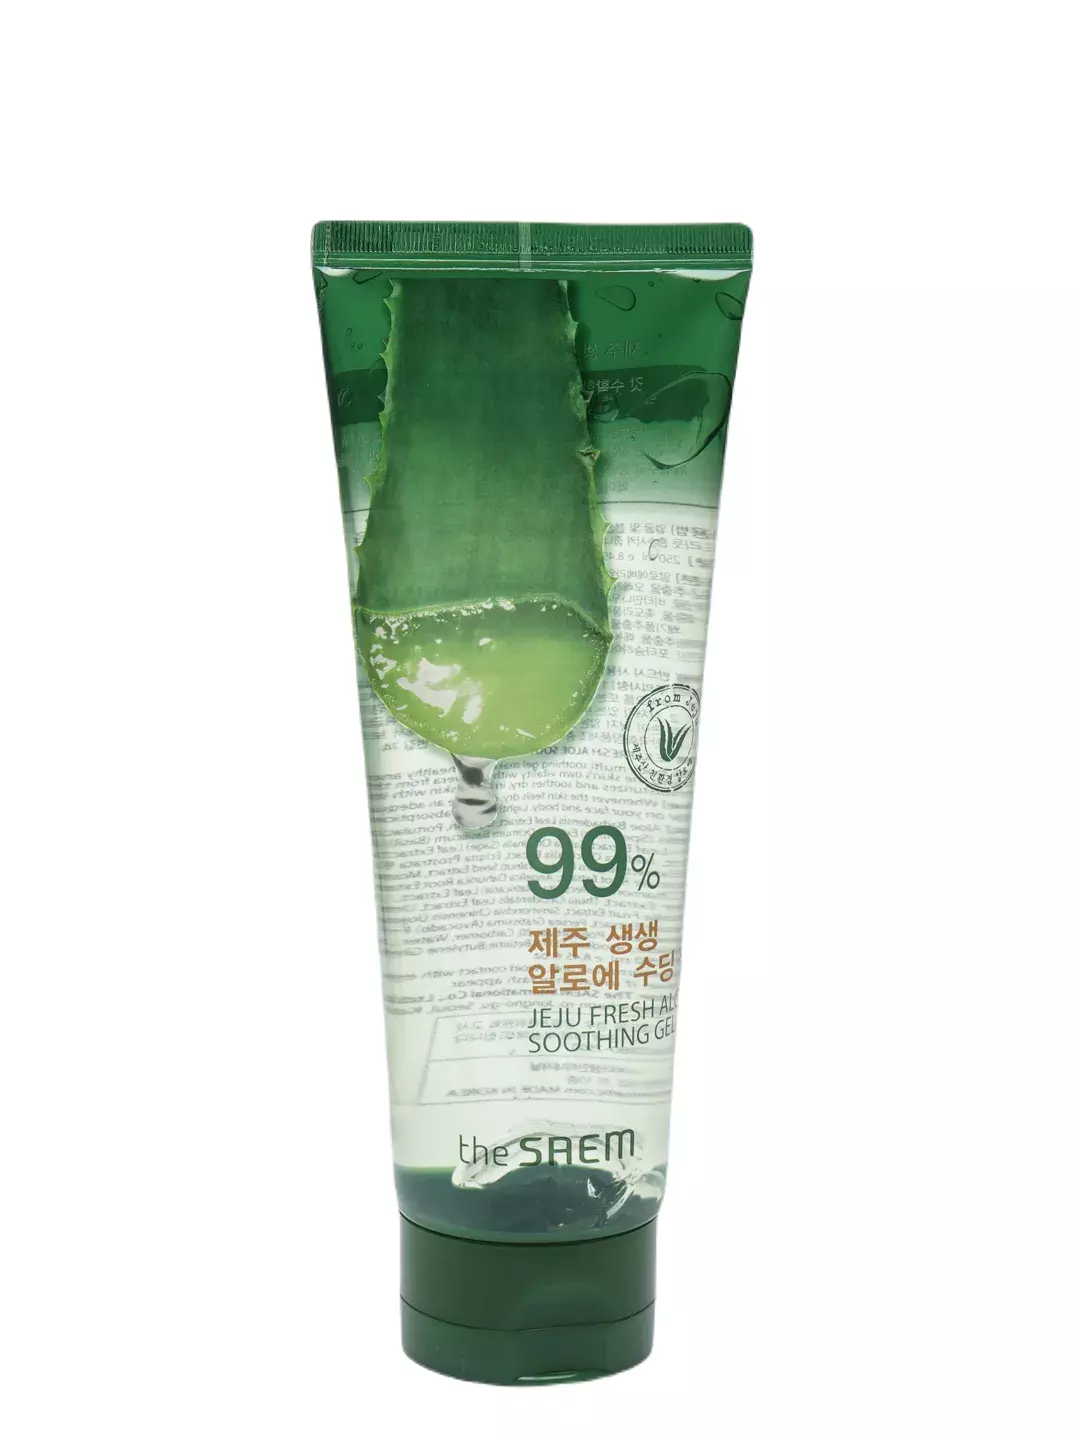 Универсальный гель алое для лица и тела The Saem Jeju Fresh Aloe Soothing Gel 99% (300мл)